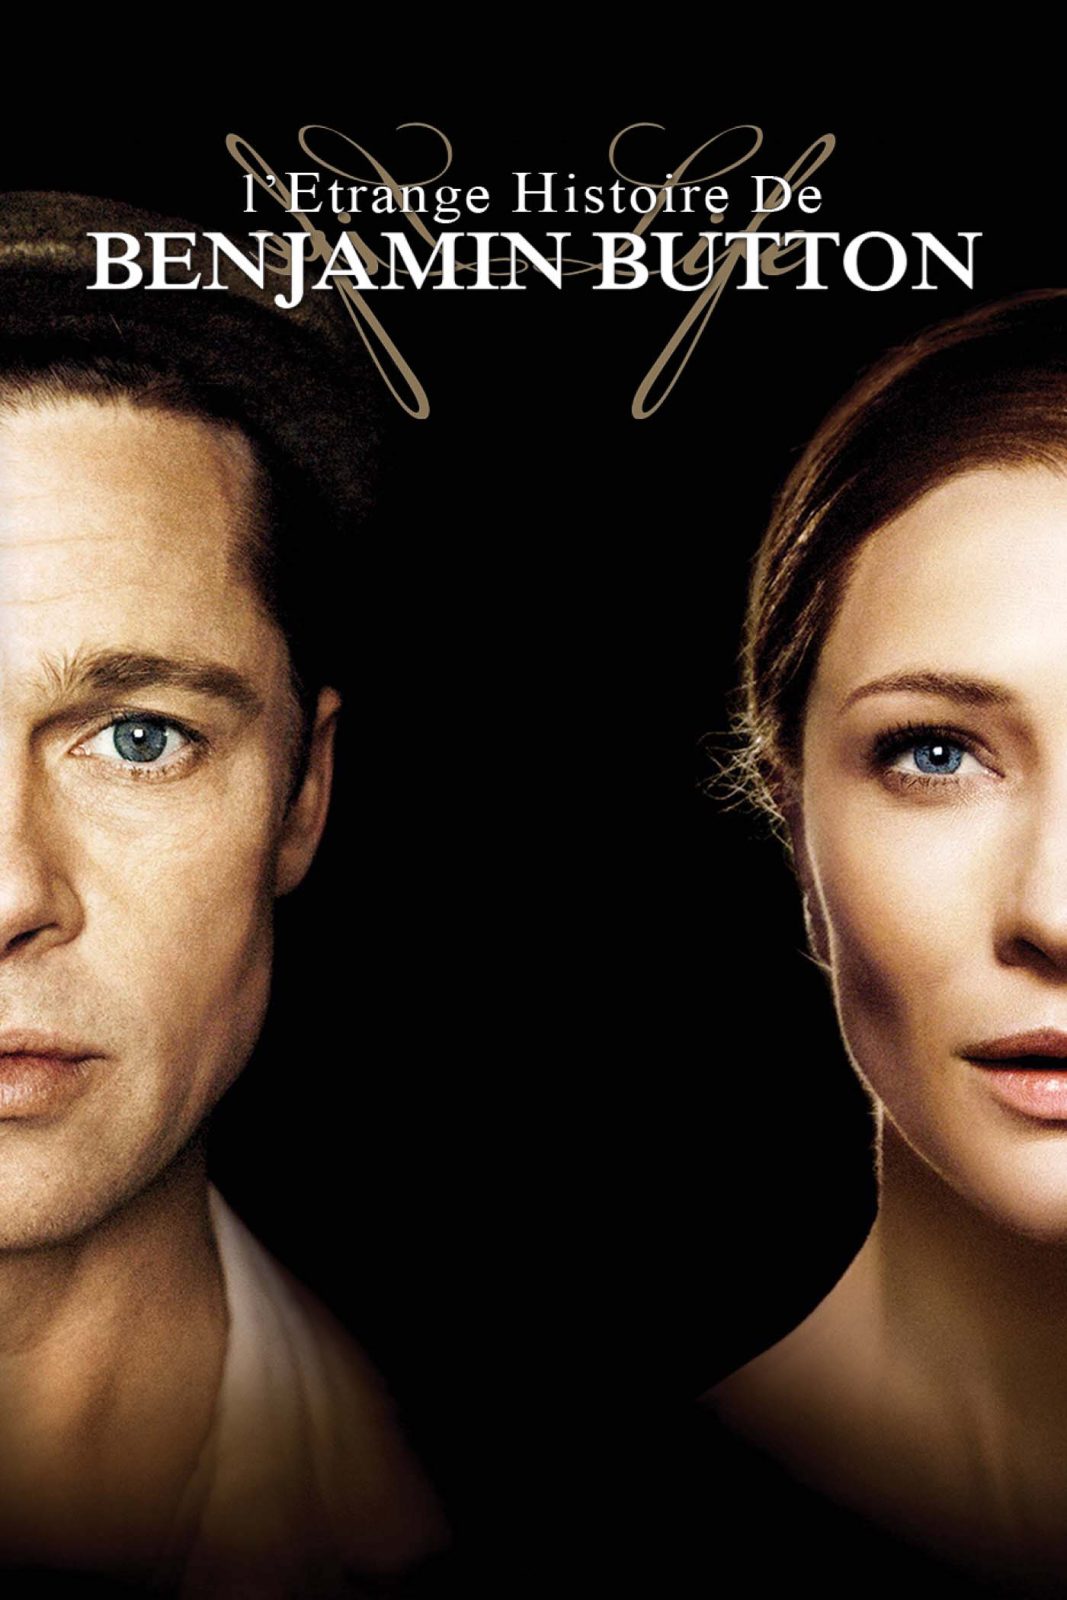 دانلود فیلم The Curious Case of Benjamin Button 2008